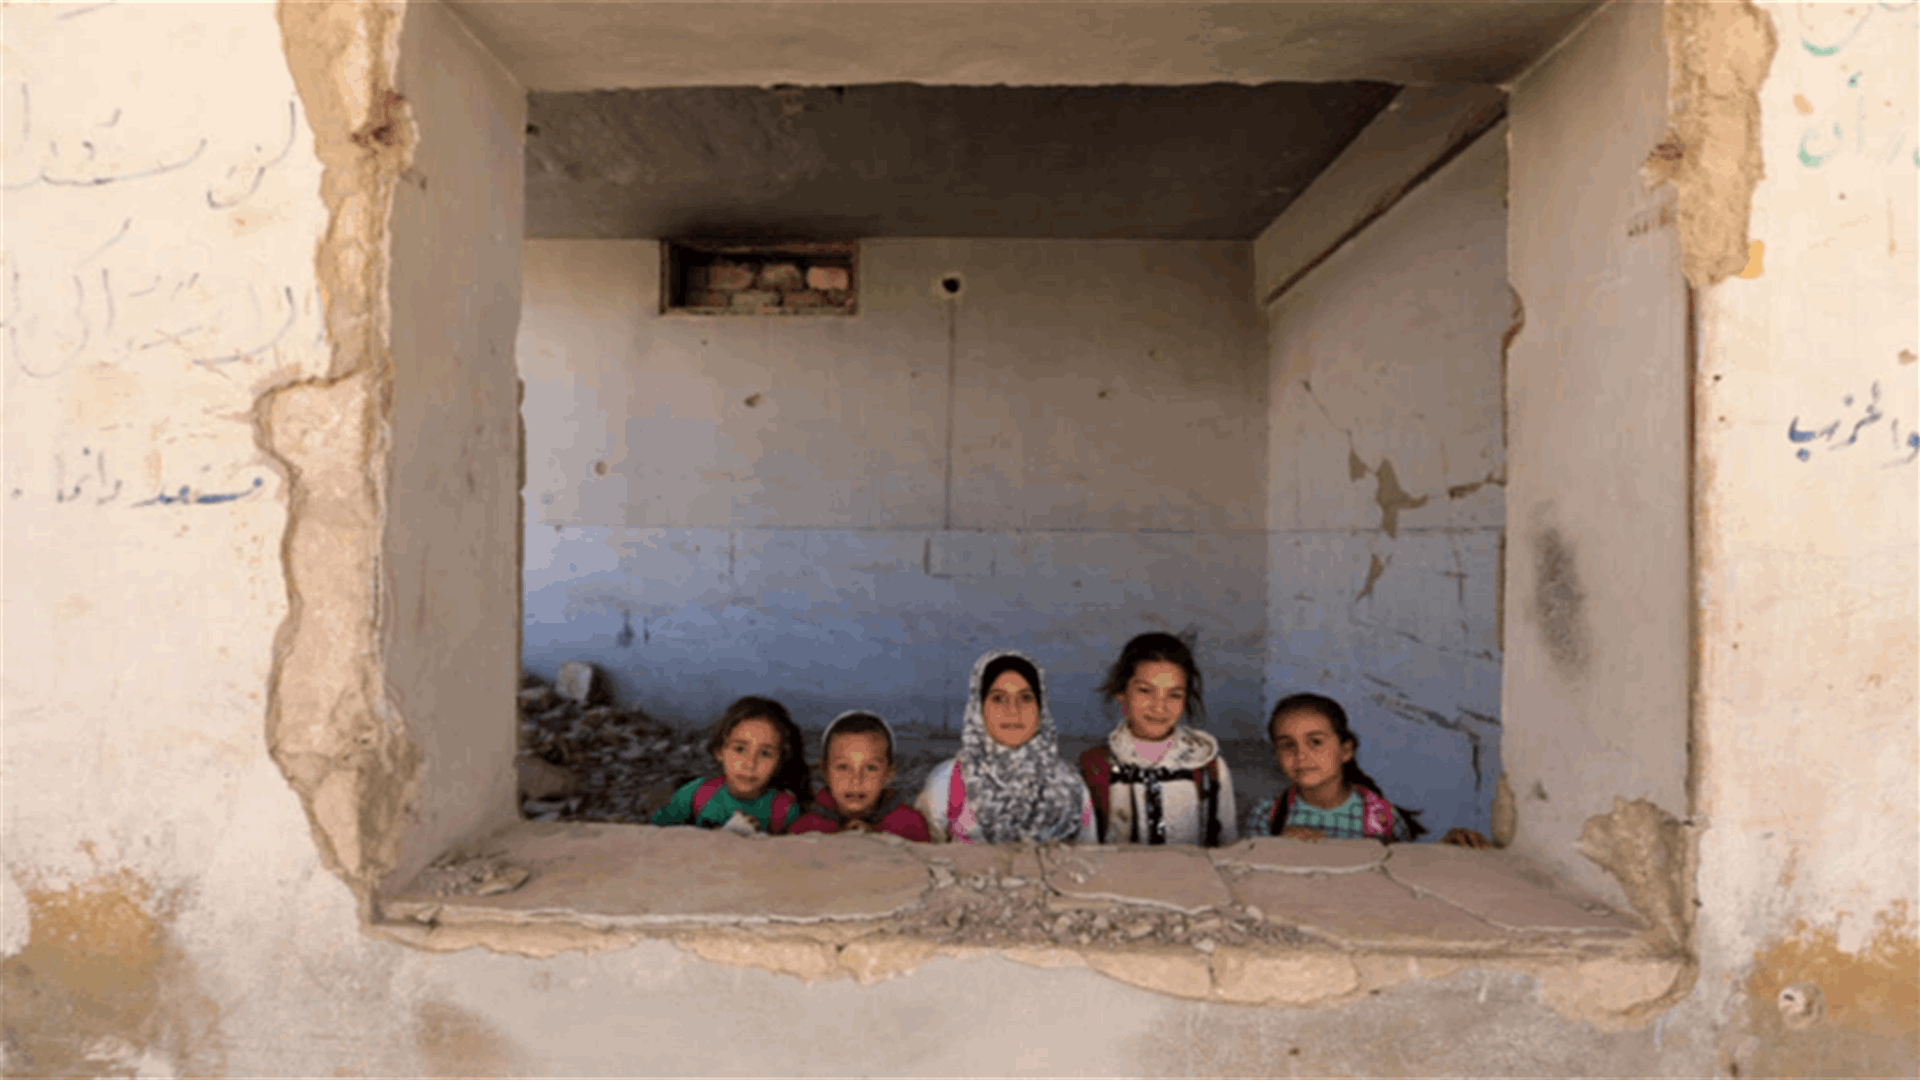 أعادت فتح أبوابها... أطفال يعودون لمدرسة دمرها القصف في سوريا